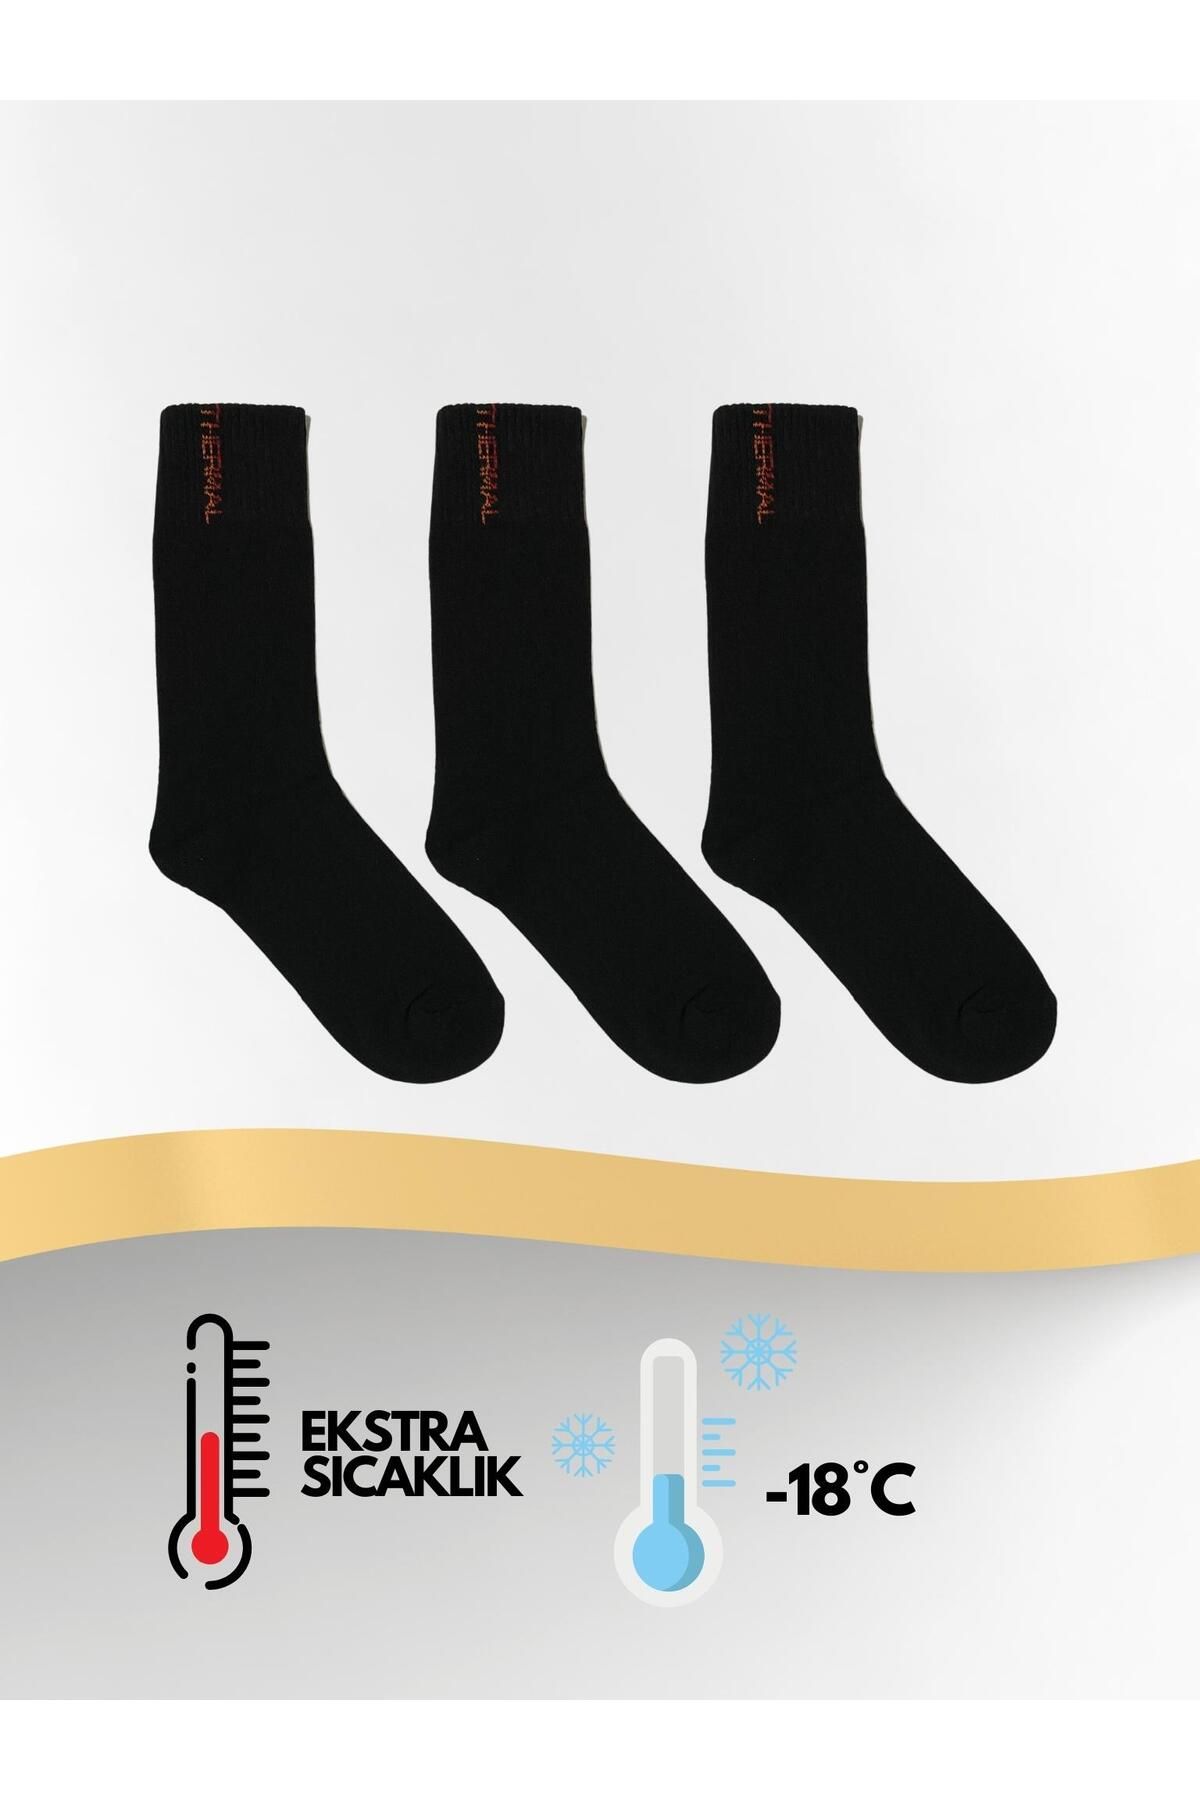 Sweex Termal Kışlık Kalın Havlu Erkek Siyah Çorap 3'lü